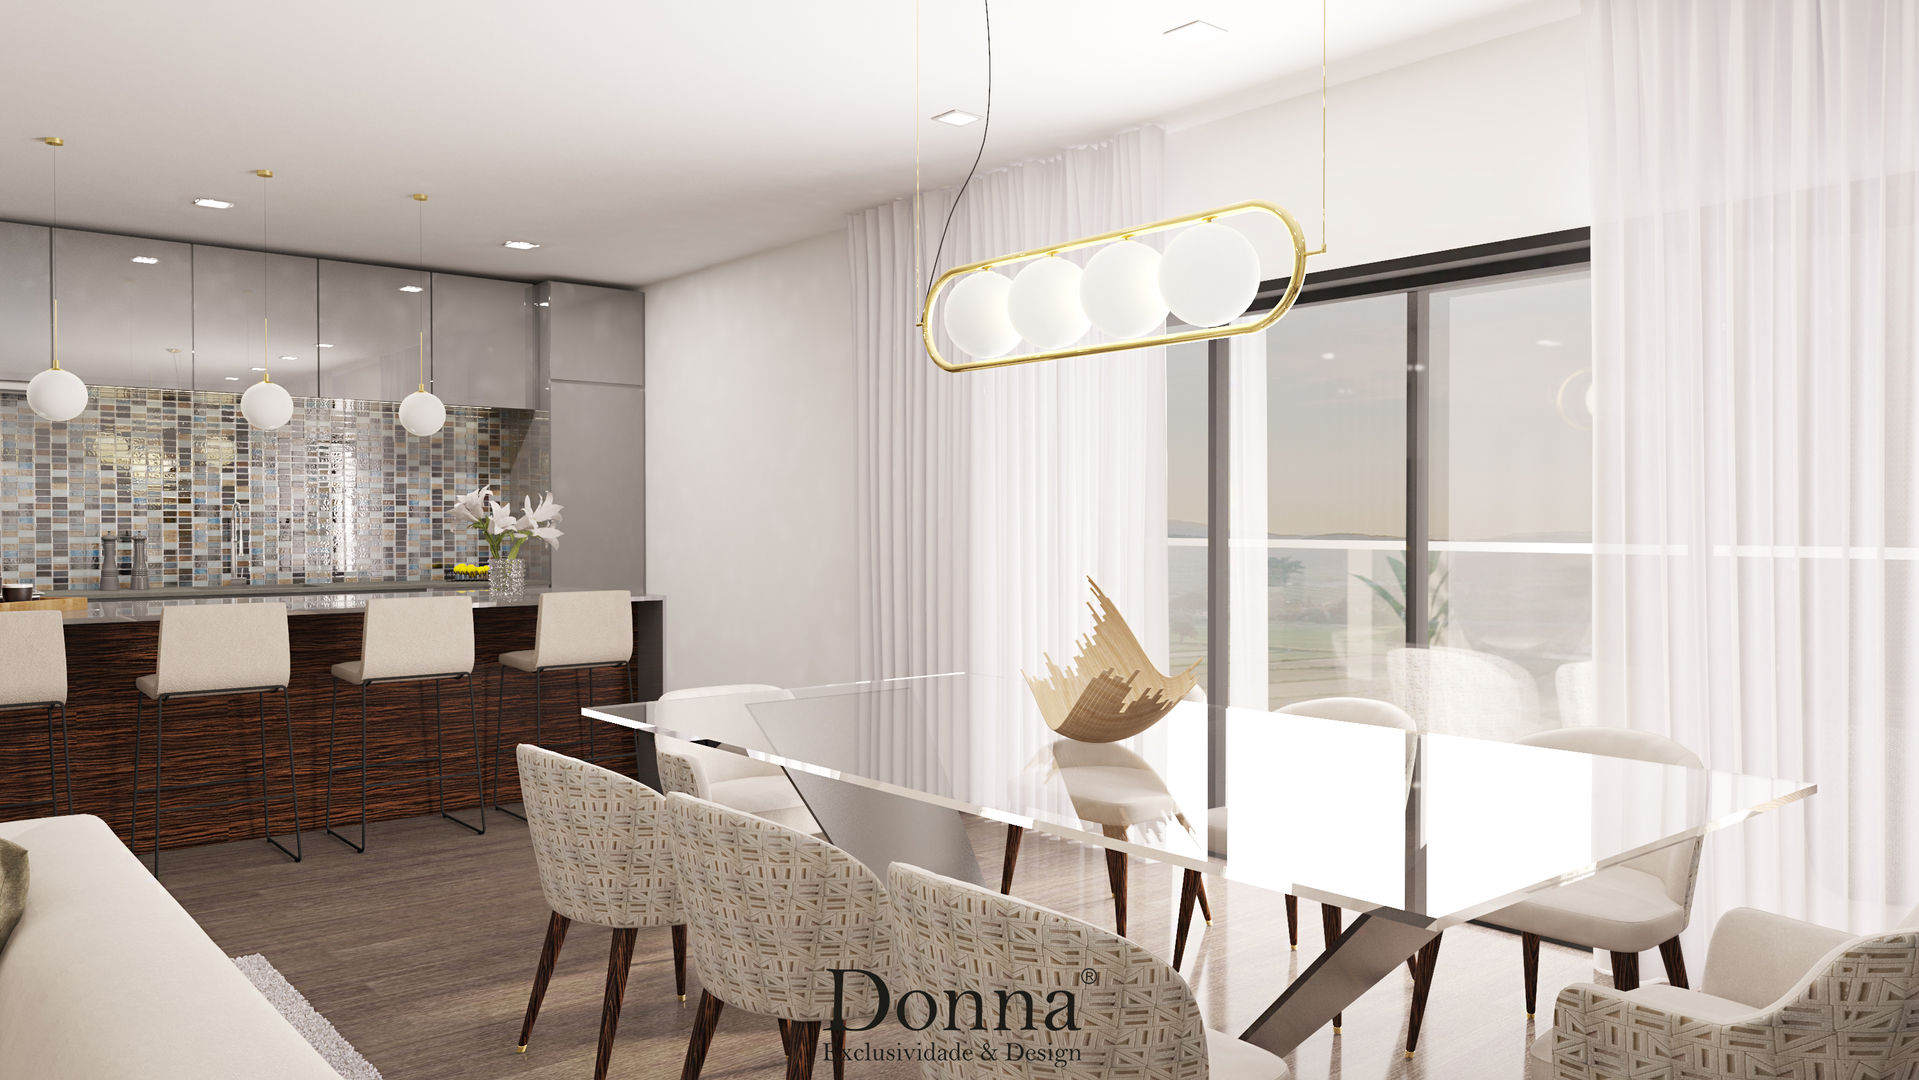 Projeto de Interiores 3D em Apartamento no Montijo , Donna - Exclusividade e Design Donna - Exclusividade e Design Comedores de estilo moderno